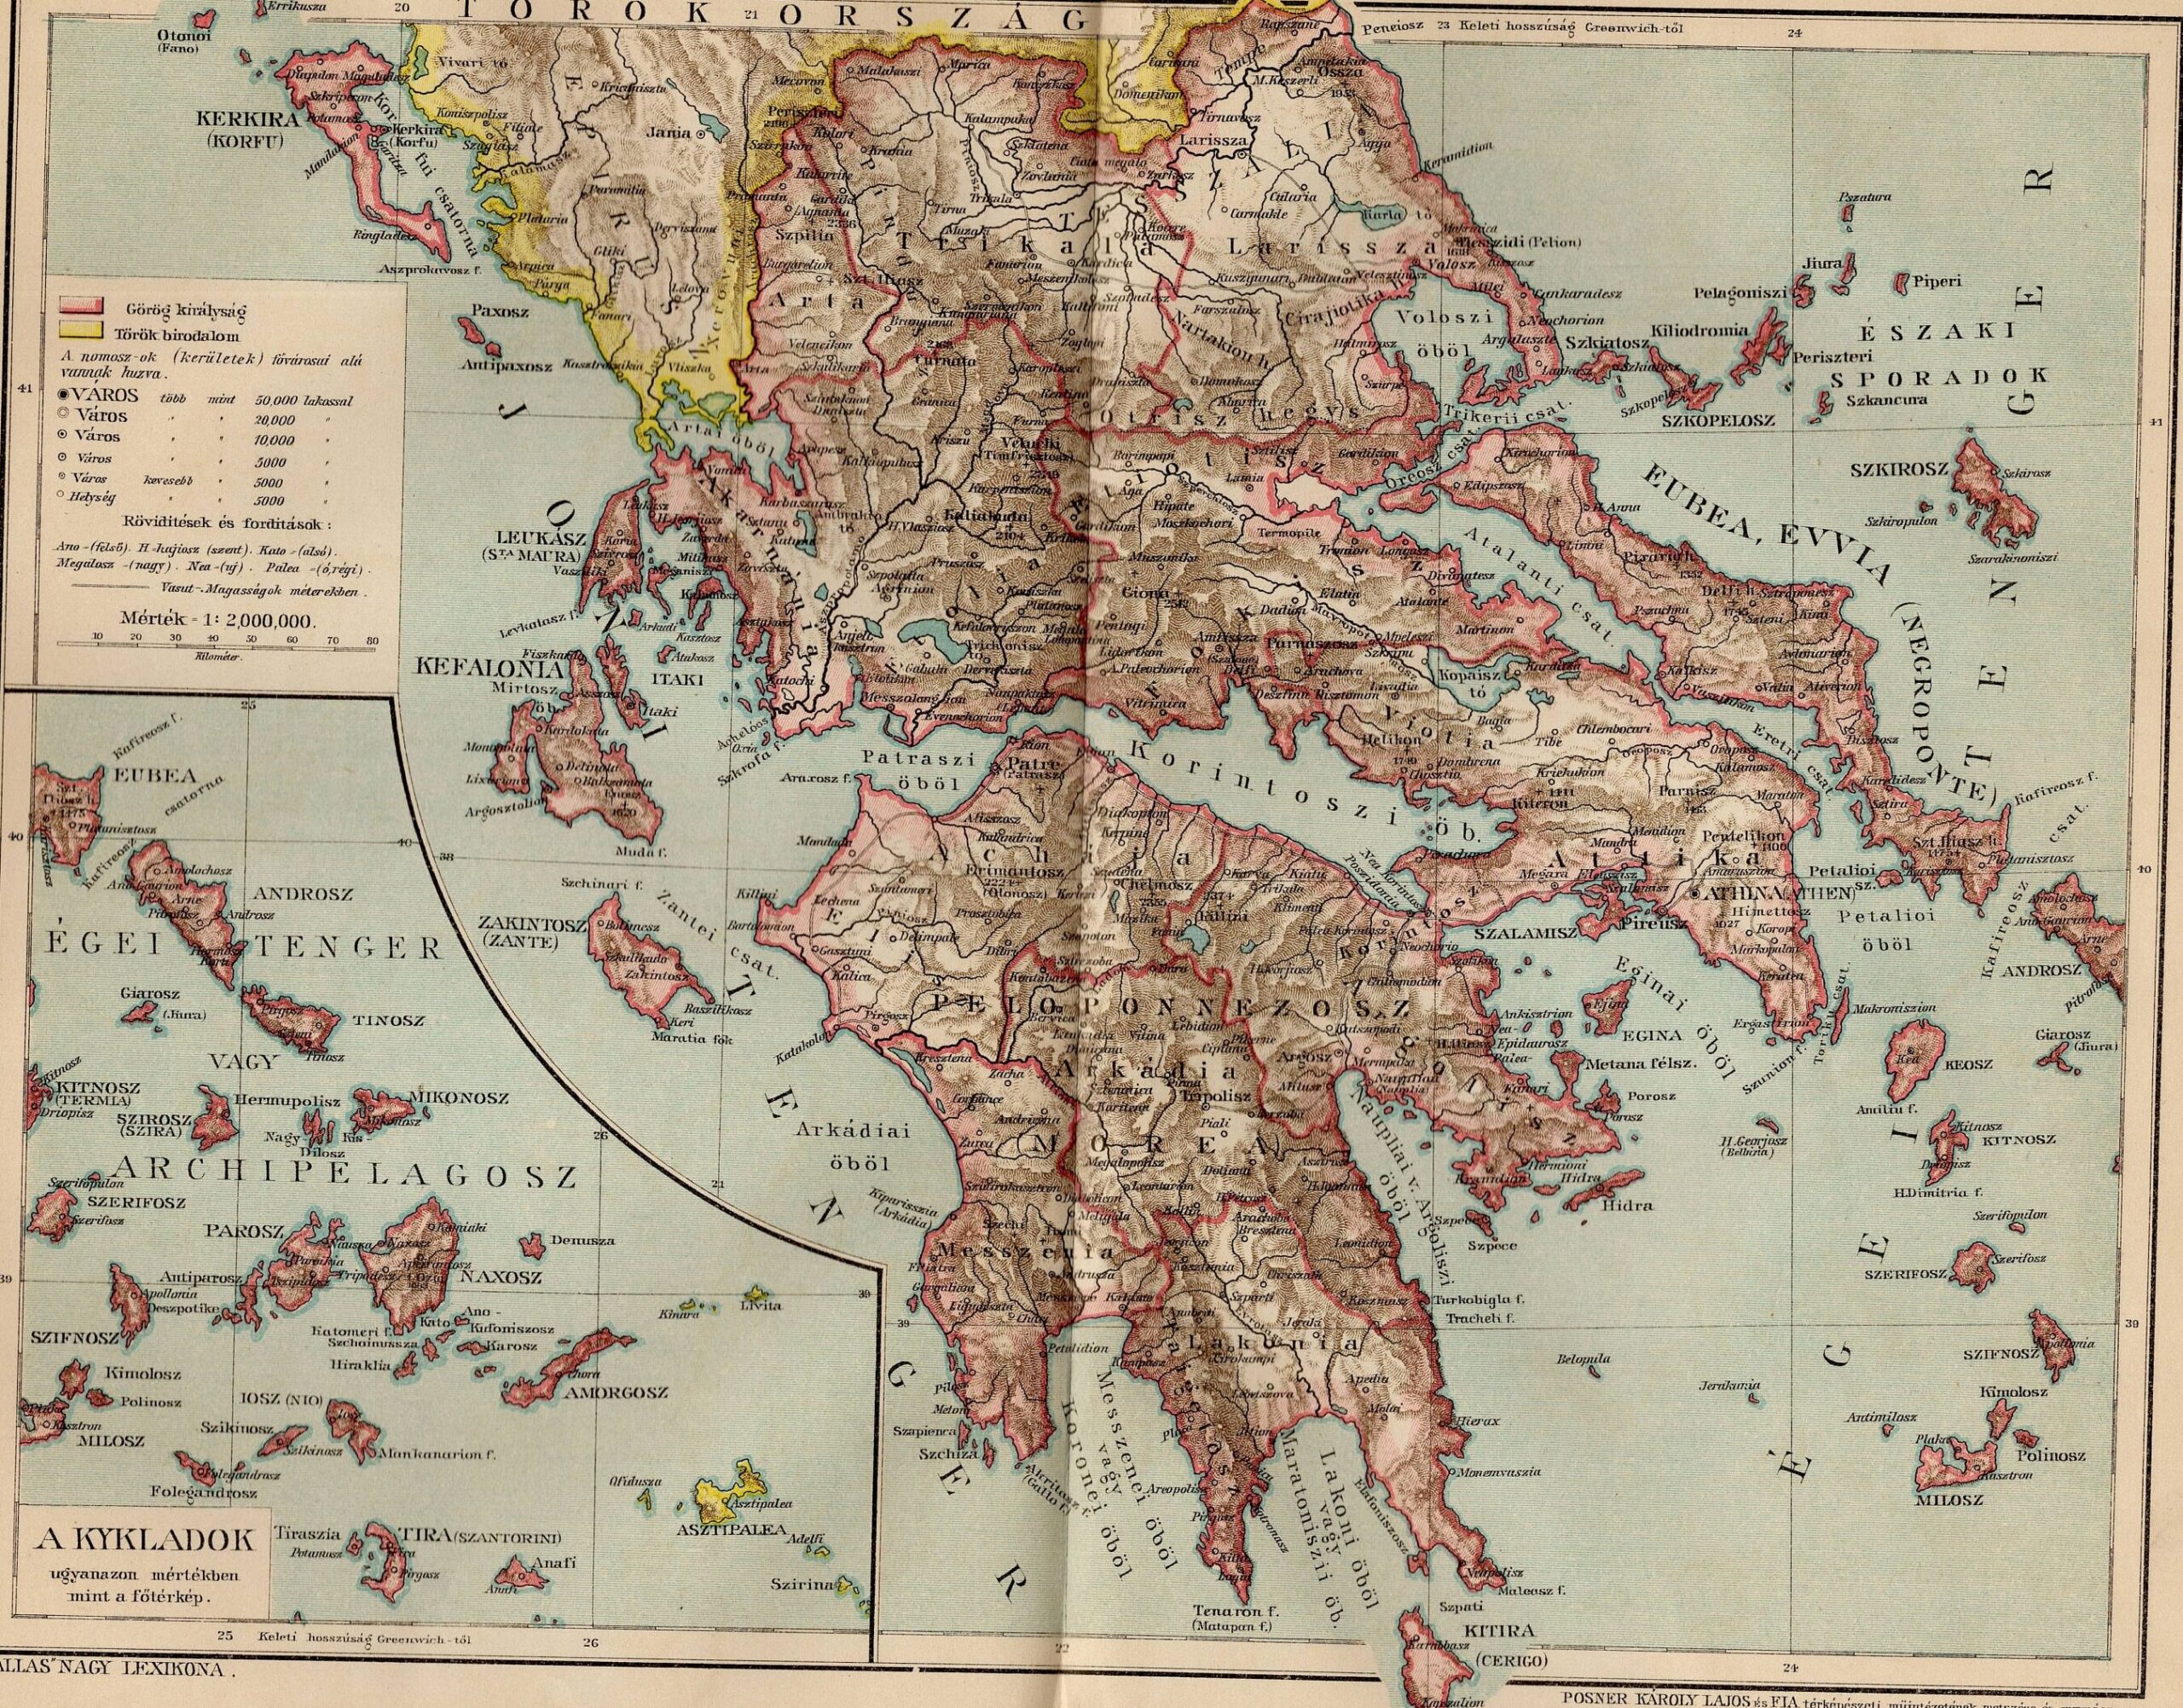 Mapa de las ciudades de la antigua Grecia: Guía para explorar la historia y la geografía griegas.